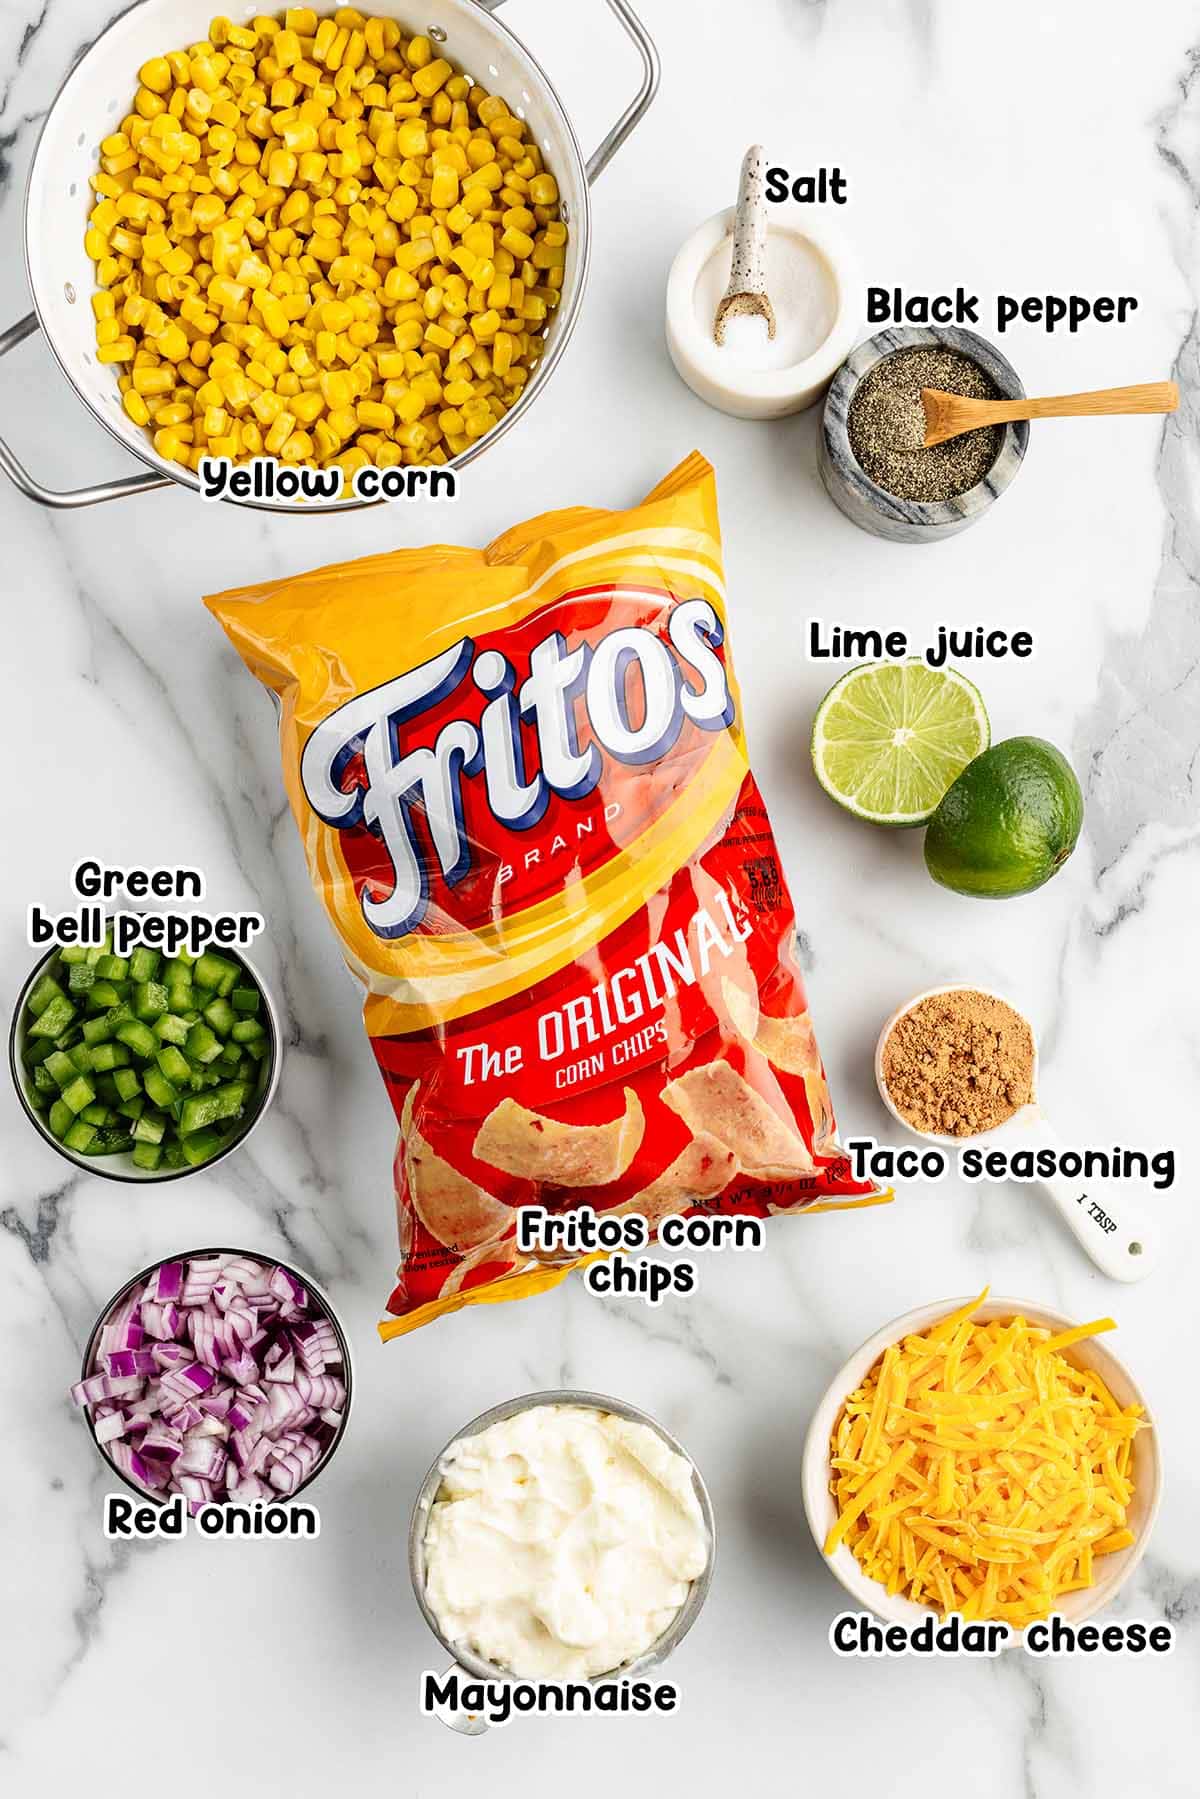 Fritos Corn Salad ingredients.